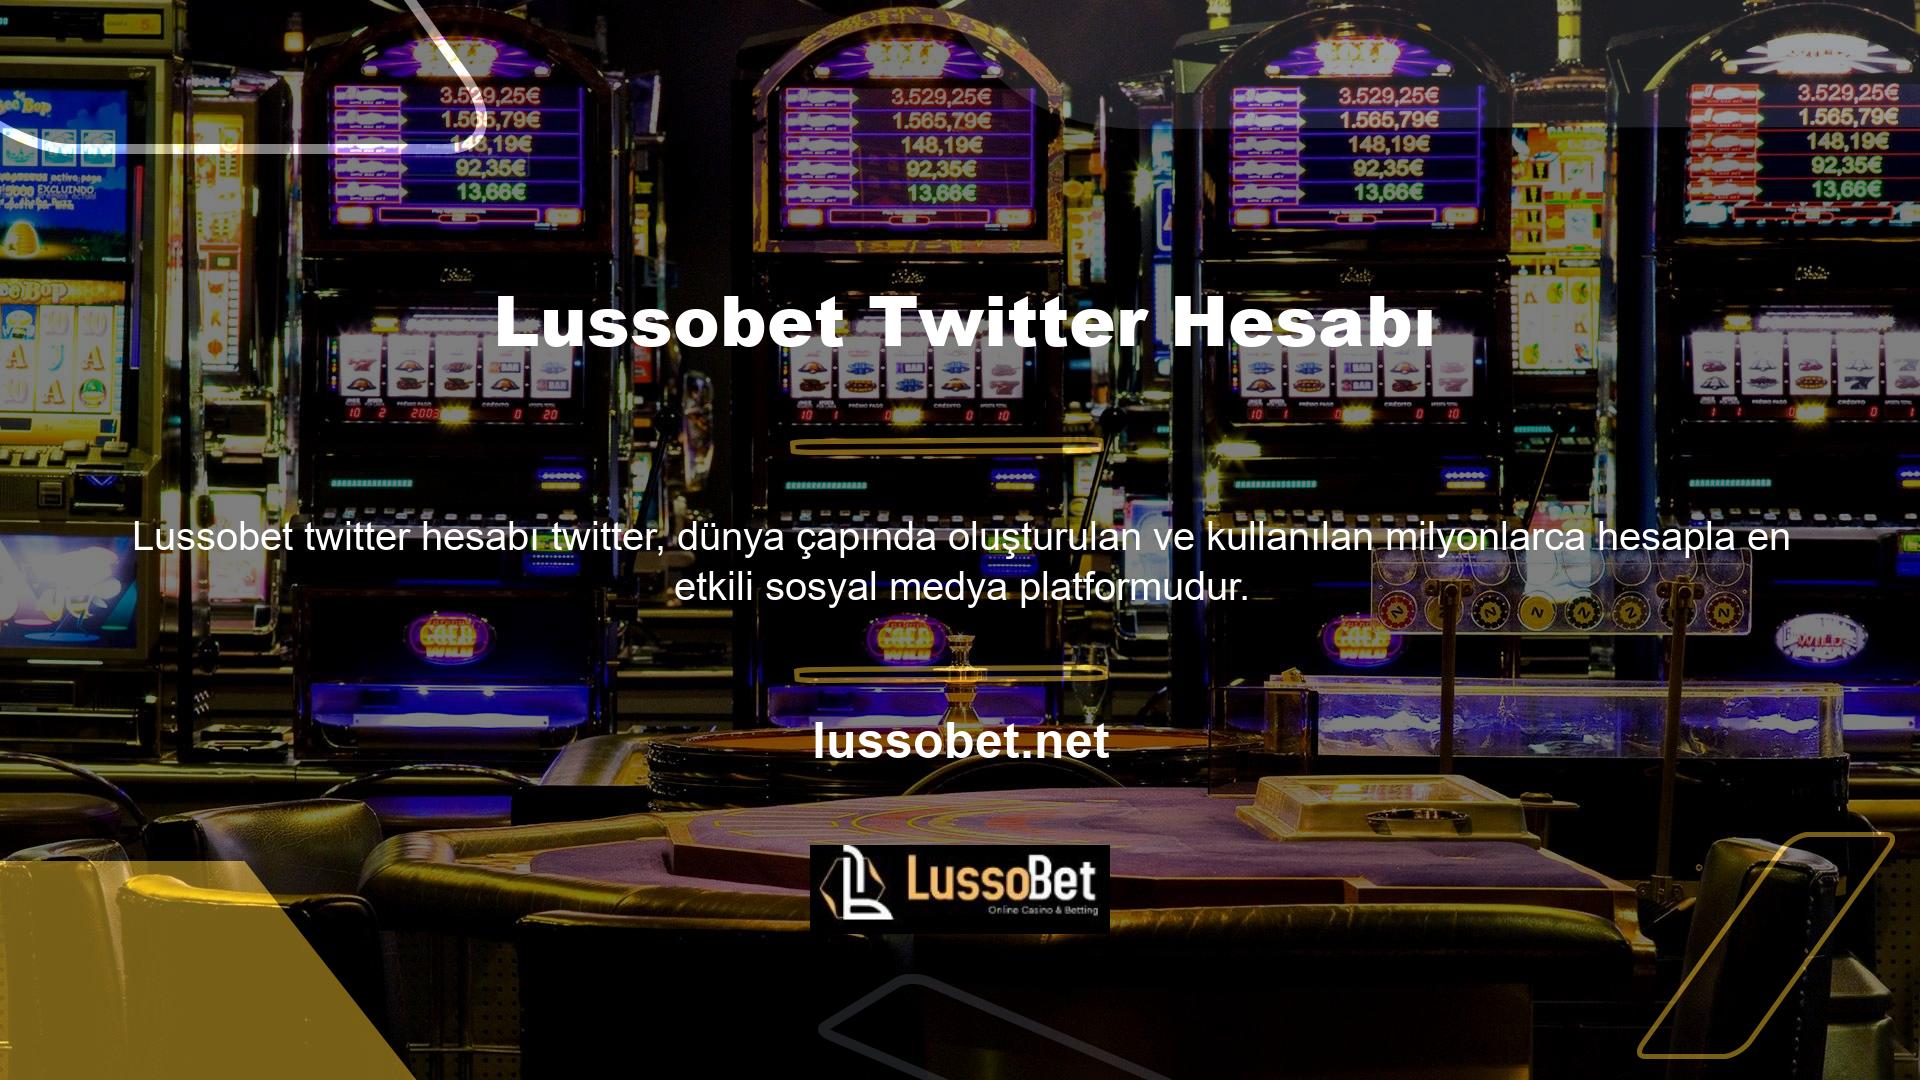 Oyun sitesi Lussobet, Türk üyelerine ve tüm oyuncularına daha hızlı giriş bilgisi ve bonus seçenekleri sunmak için resmi Twitter hesabını kullanıyor